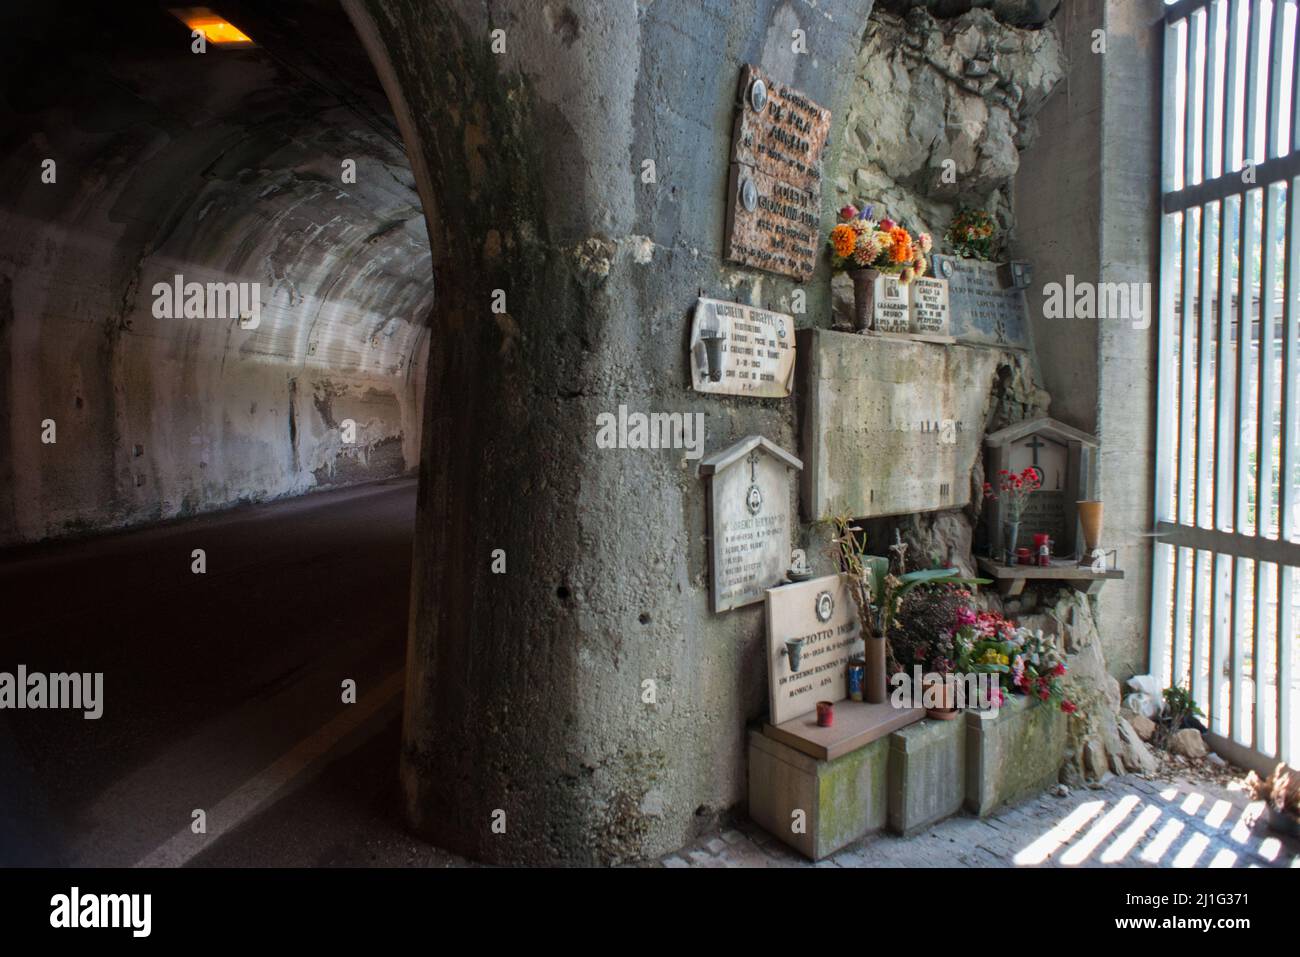 Erto und Casso (Pordenone), Italien 21/05/2016: Grabsteine in Erinnerung an die Arbeiter, die beim Bau des Staudamms und der Vajont-Katastrophe im Oktober 1963 getötet wurden. © Andrea Sabbadini Stockfoto